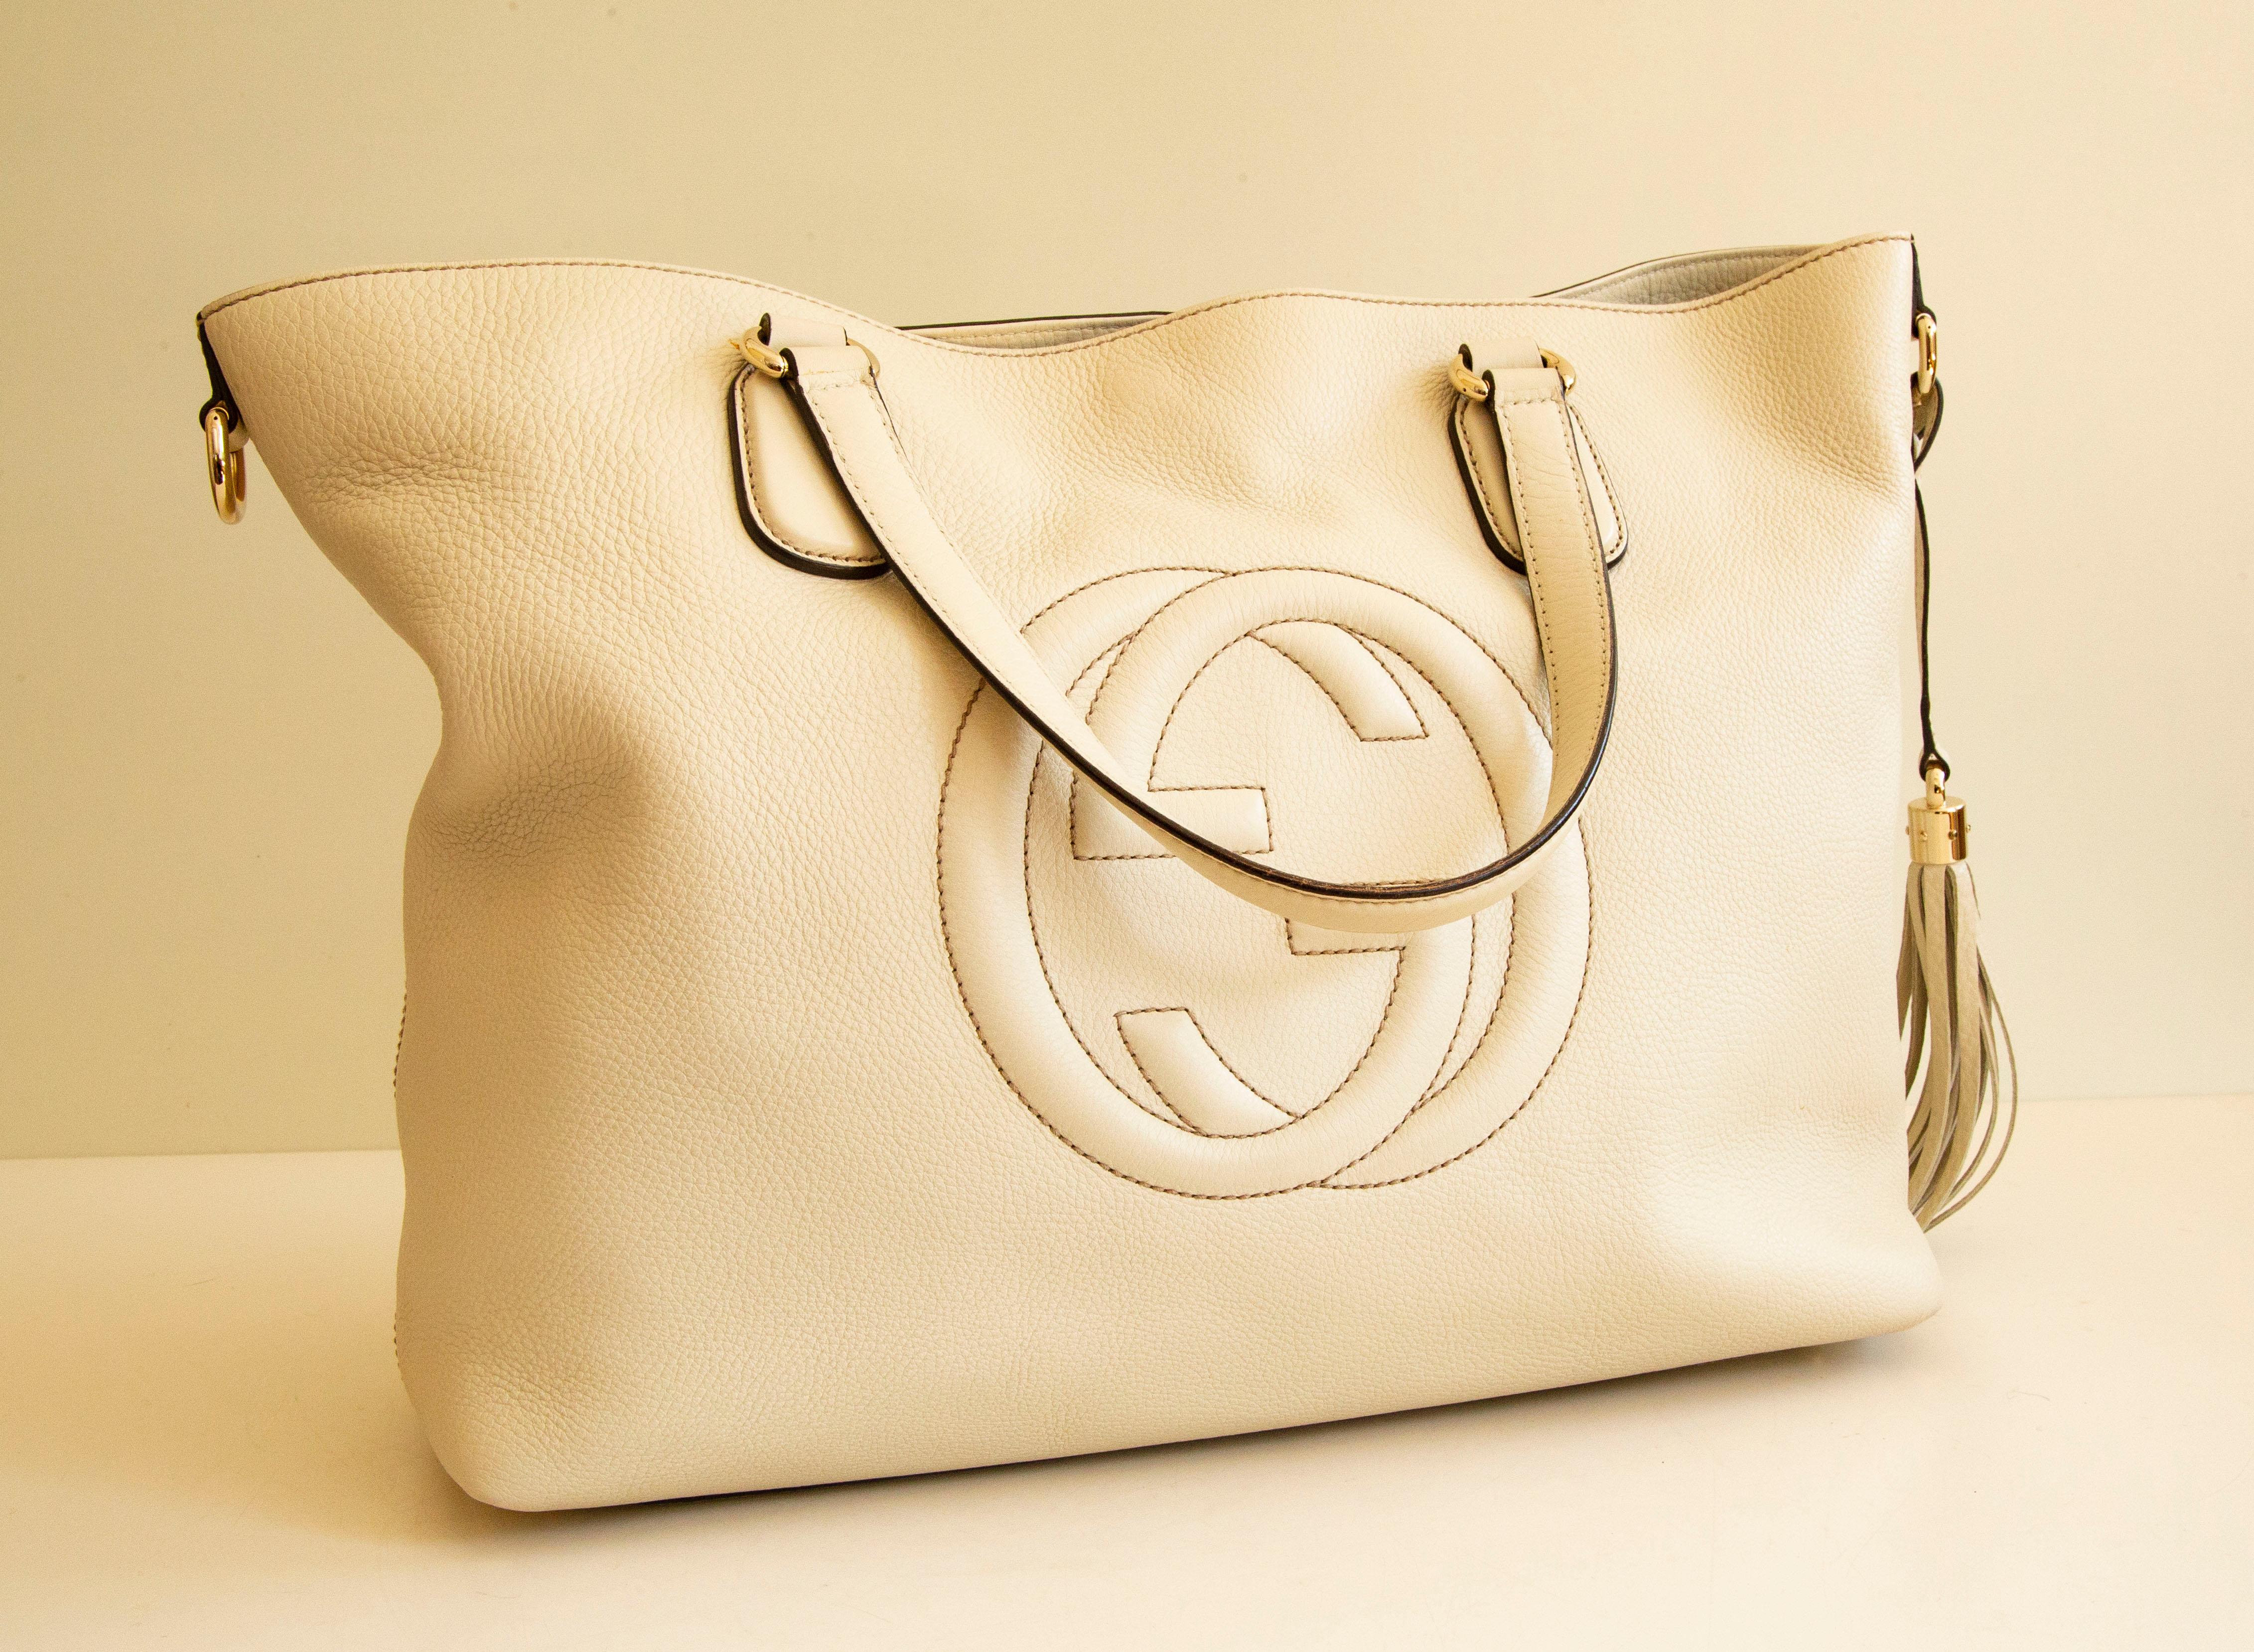 Un sac à main Gucci SOHO en cuir blanc cassé avec des ferrures en or clair. Il est doté d'un pompon en cuir amovible. L'intérieur est doublé de toile beige et, à côté du compartiment principal, il comporte trois poches latérales, dont l'une est